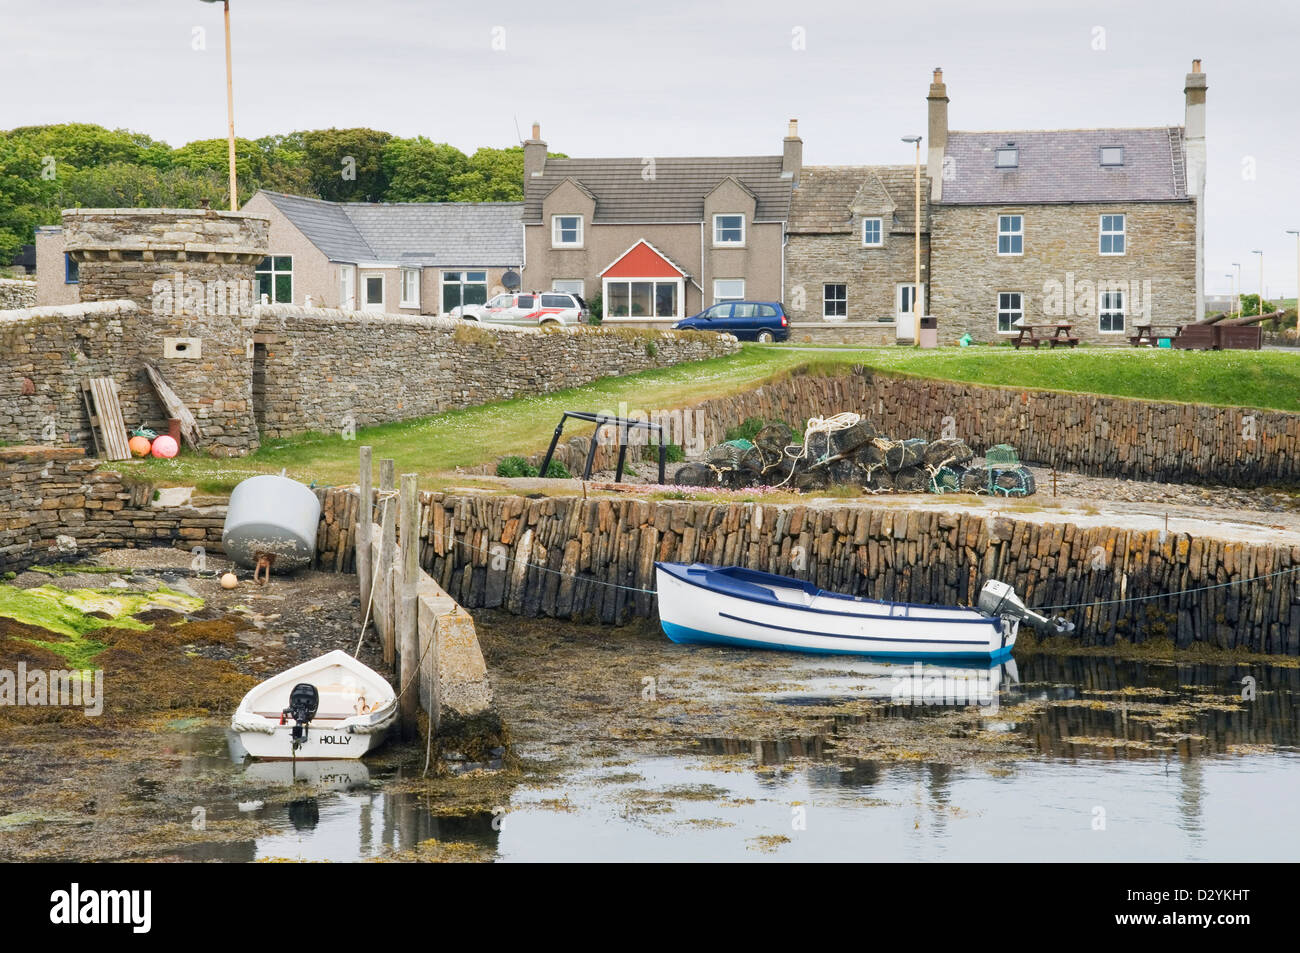 Balfour Villaggio sull'isola di Shapinsay, Orkney Islands, Scozia. Foto Stock